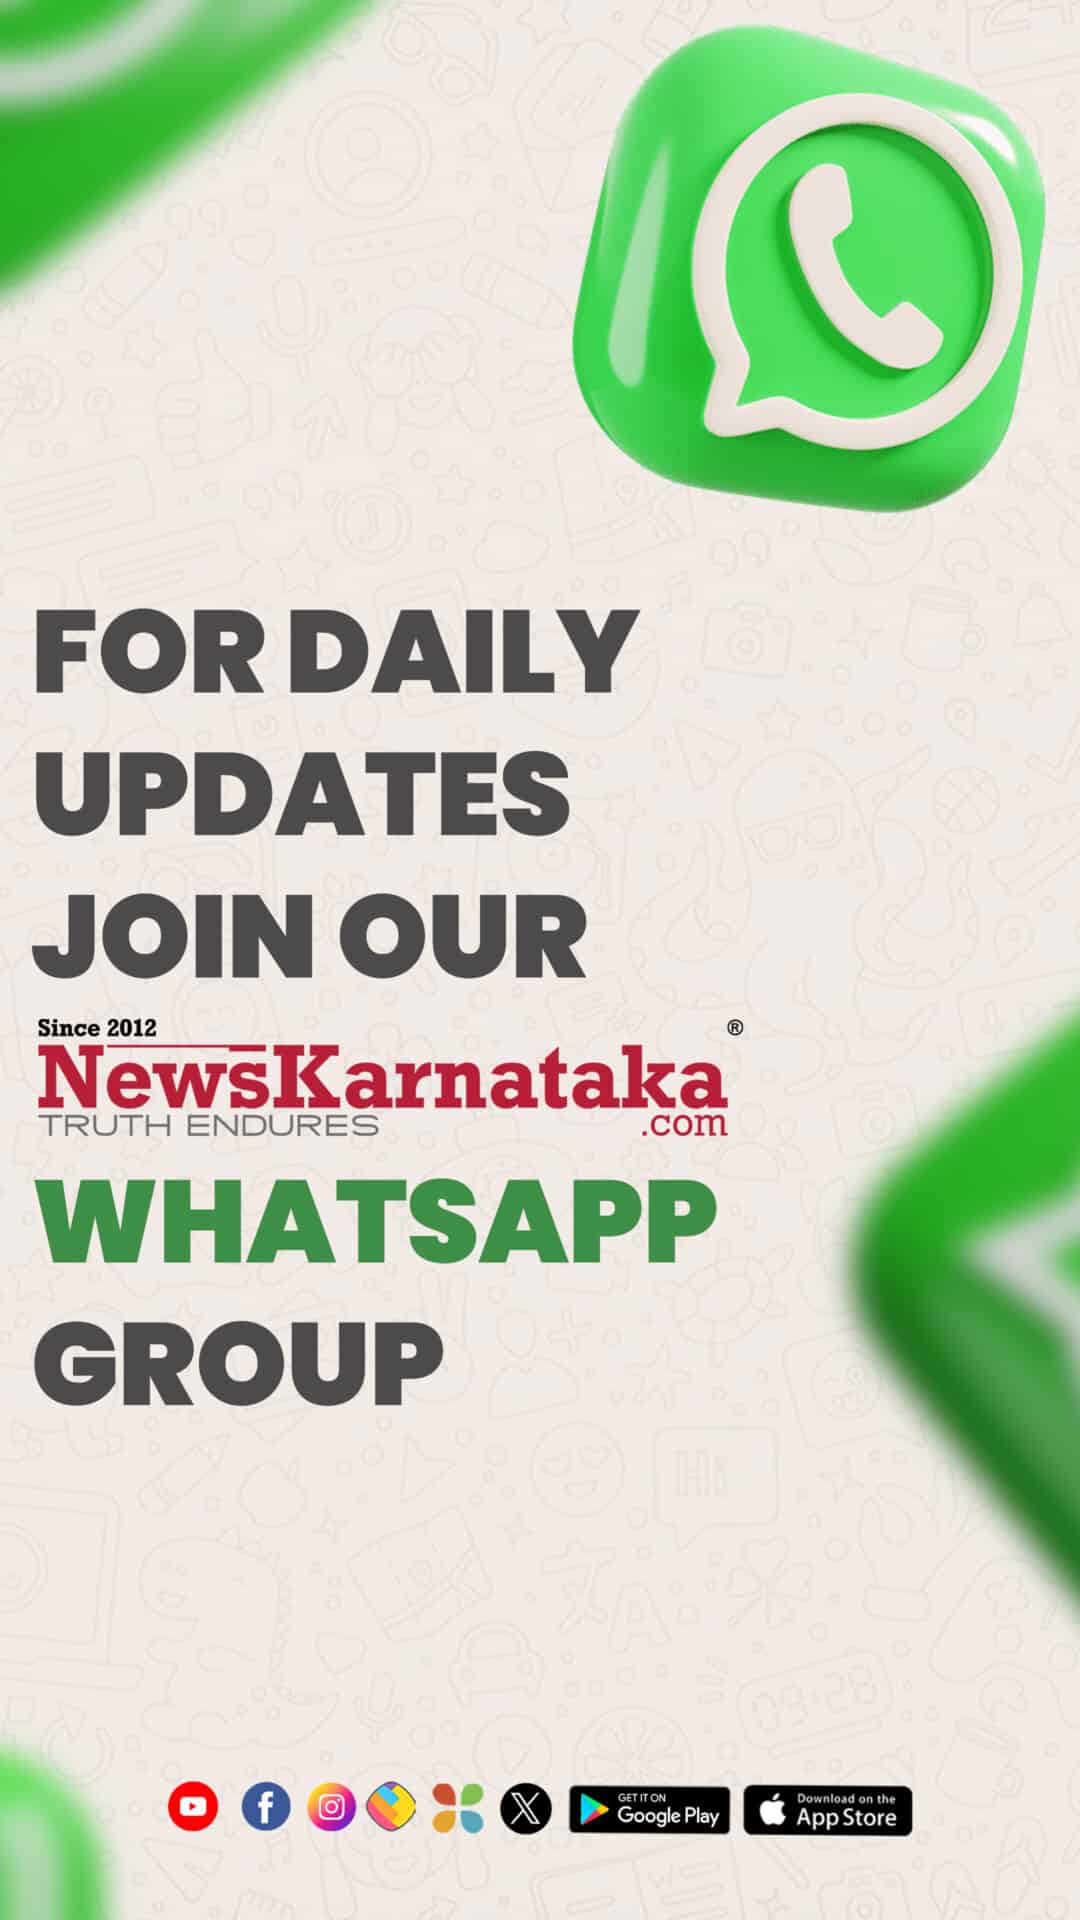 WHATSAPP GROUPSNEWS KARNATAKA - Travel News, Insights & Resources.